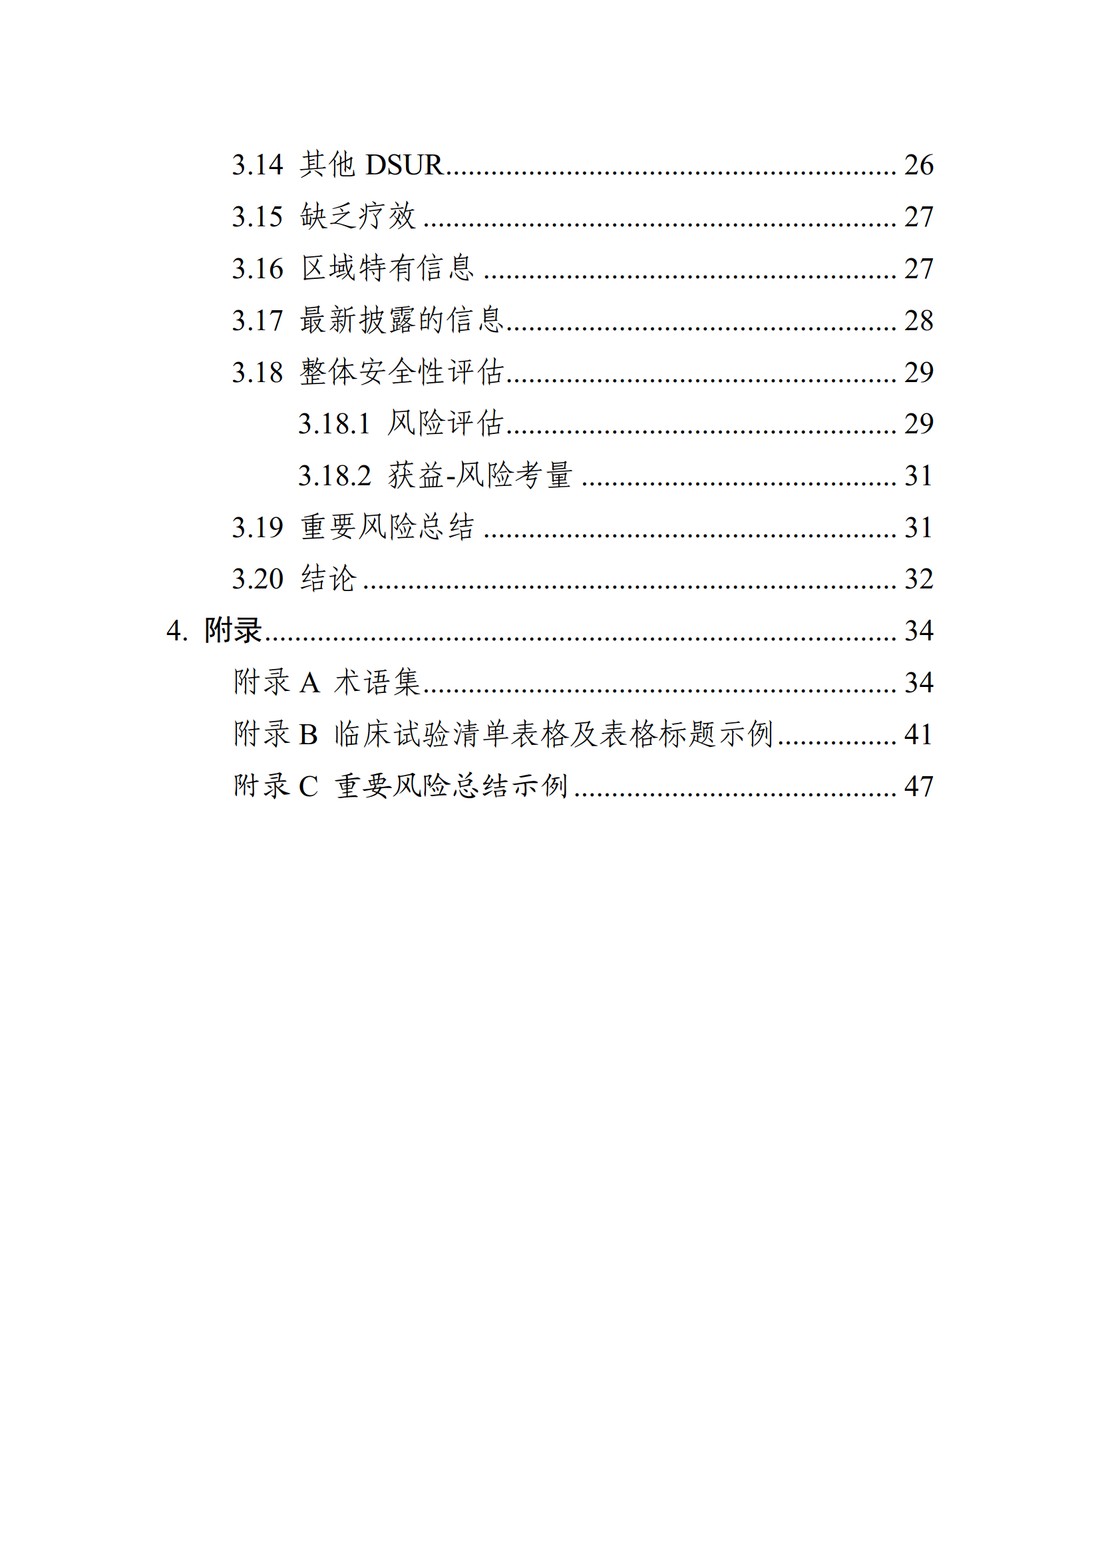 E2F 研发期间安全性更新报告(中文翻译公开征求意见稿)_05.jpg